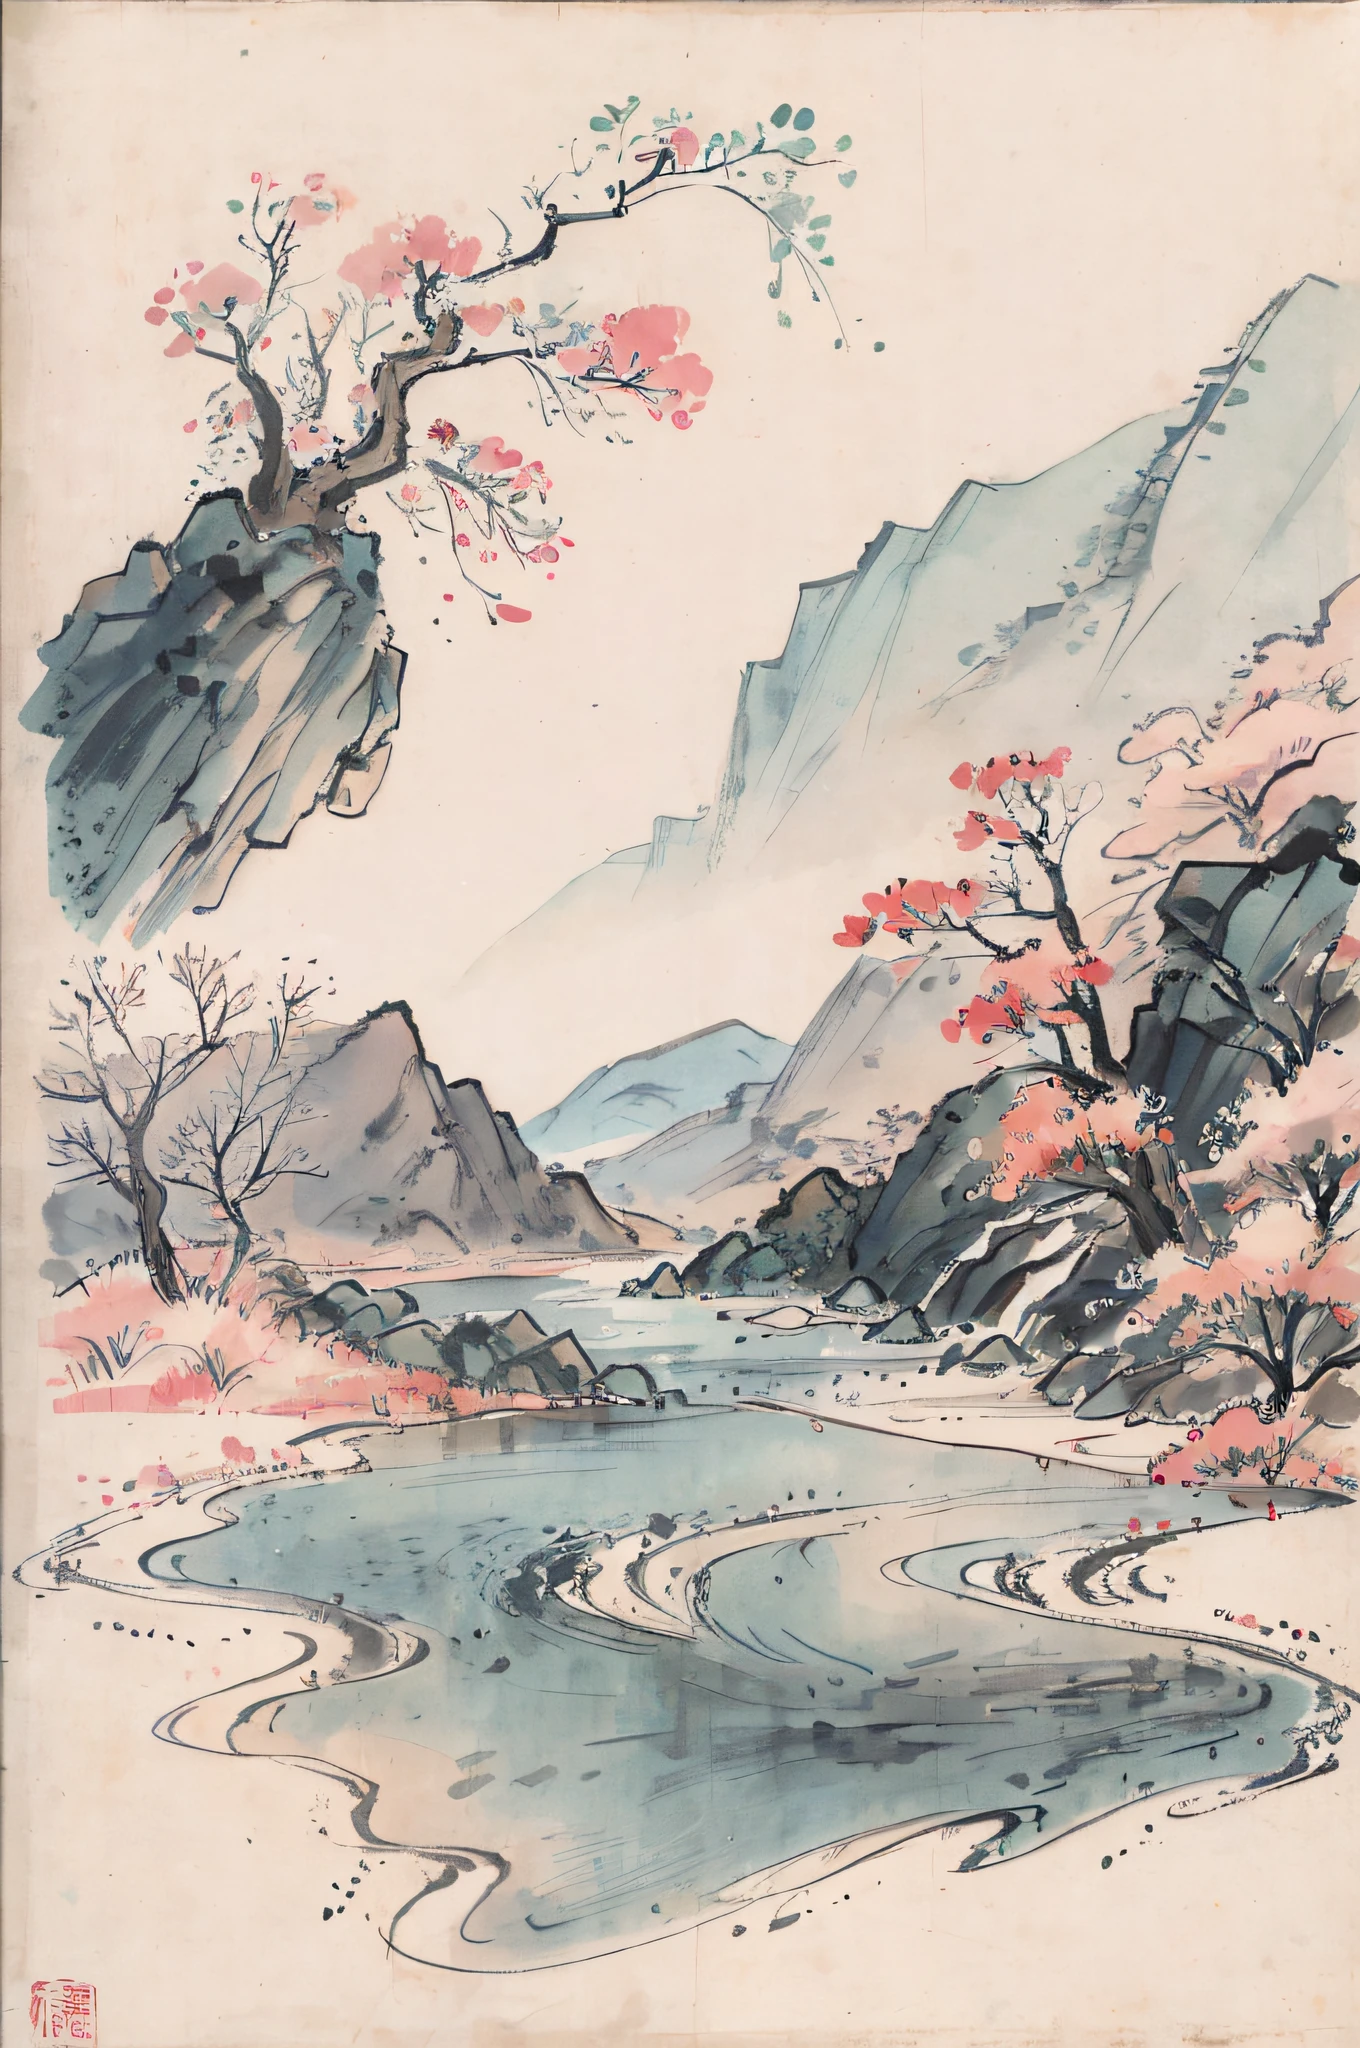 (Obra de arte, melhor qualidade: 1.2), pintura a tinta tradicional chinesa, montanhas verdes, rios, composição simples